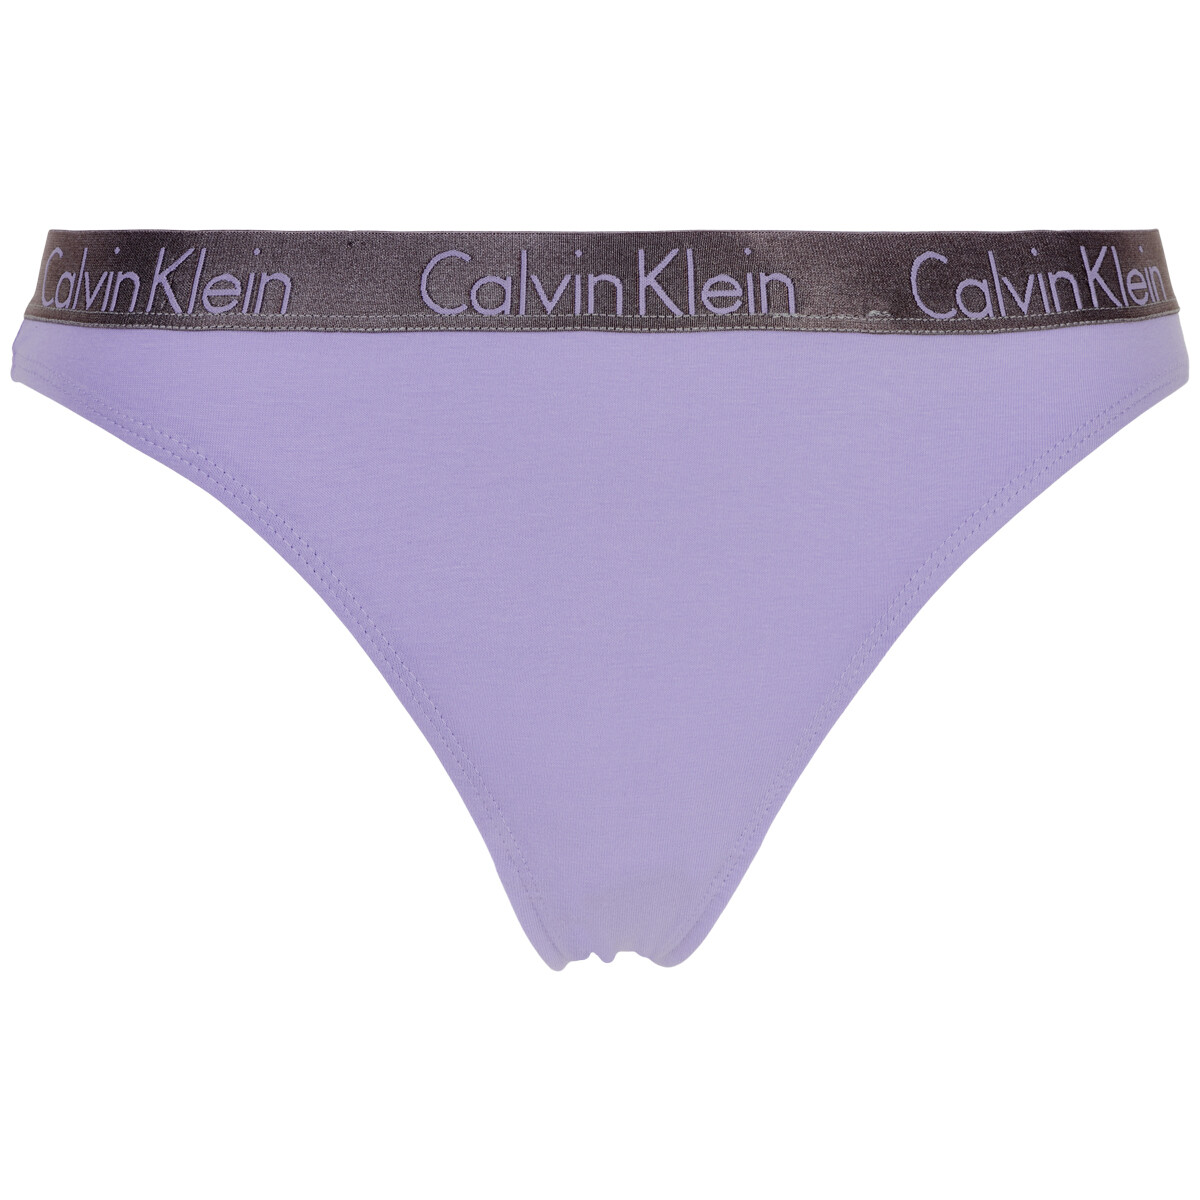 Calvin Klein Lingeri String Slip, Farbe: Vervian Lila, Größe: L, Damen von Calvin klein